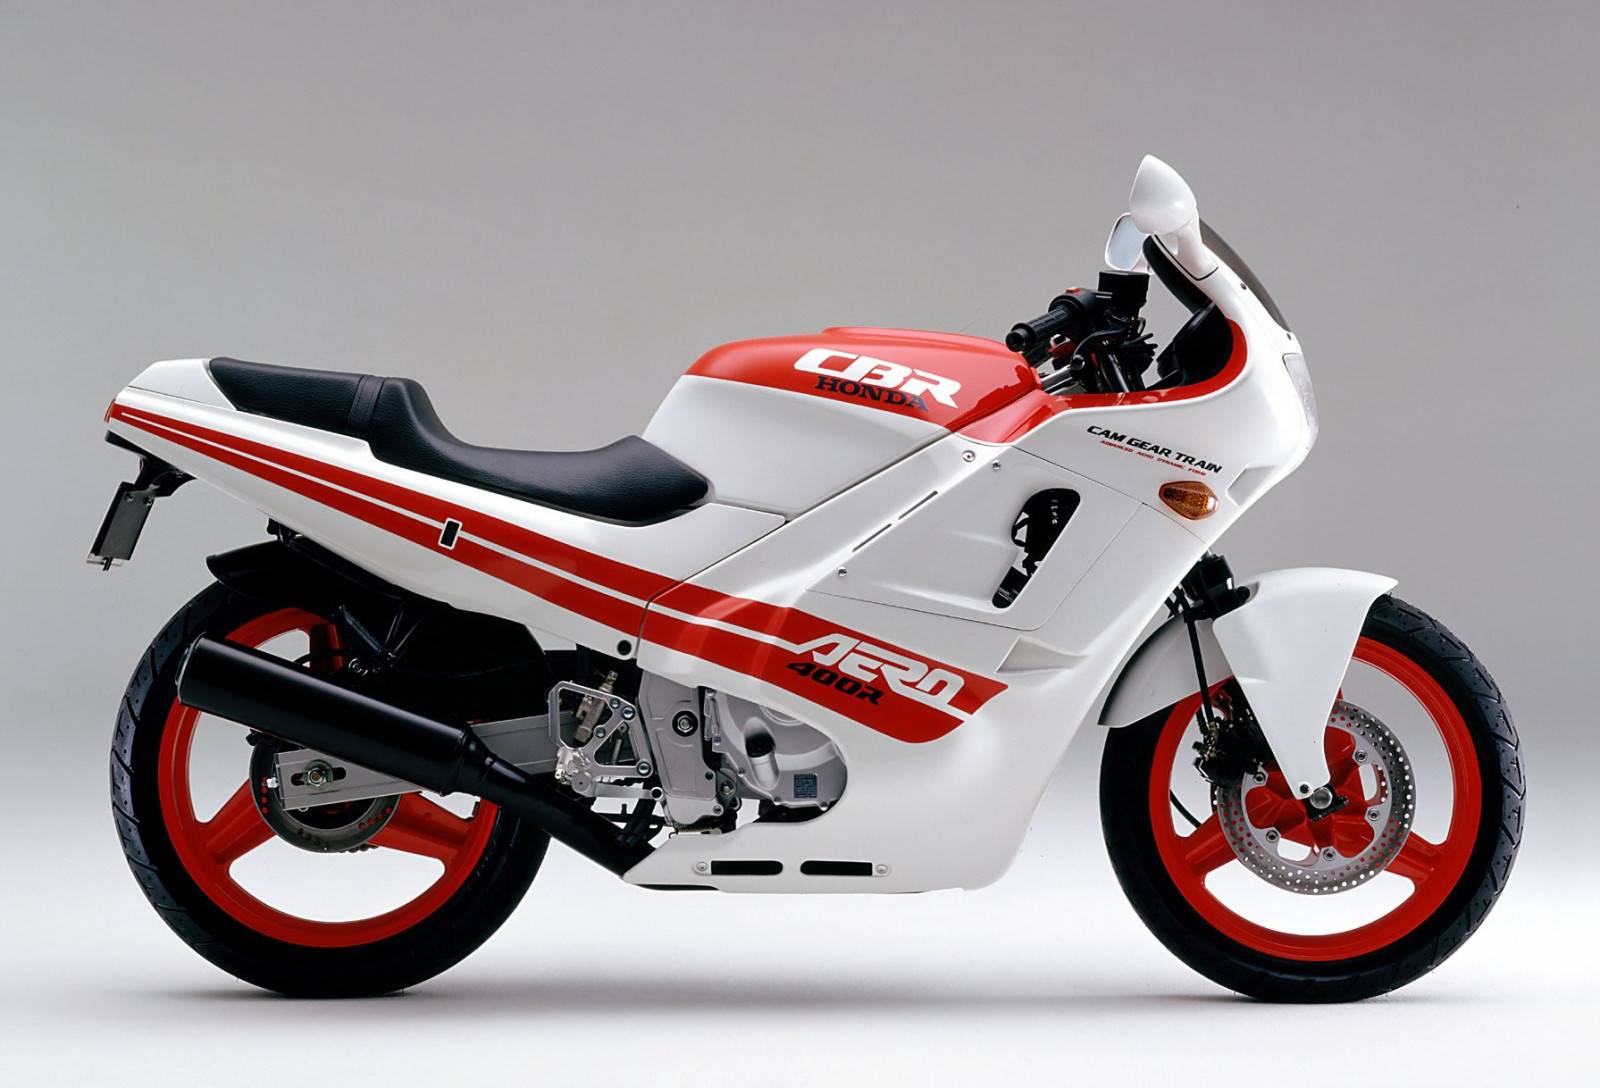 Мотоцикл honda cbr 400 rr - стильный спортивный дизайн | ⚡chtocar